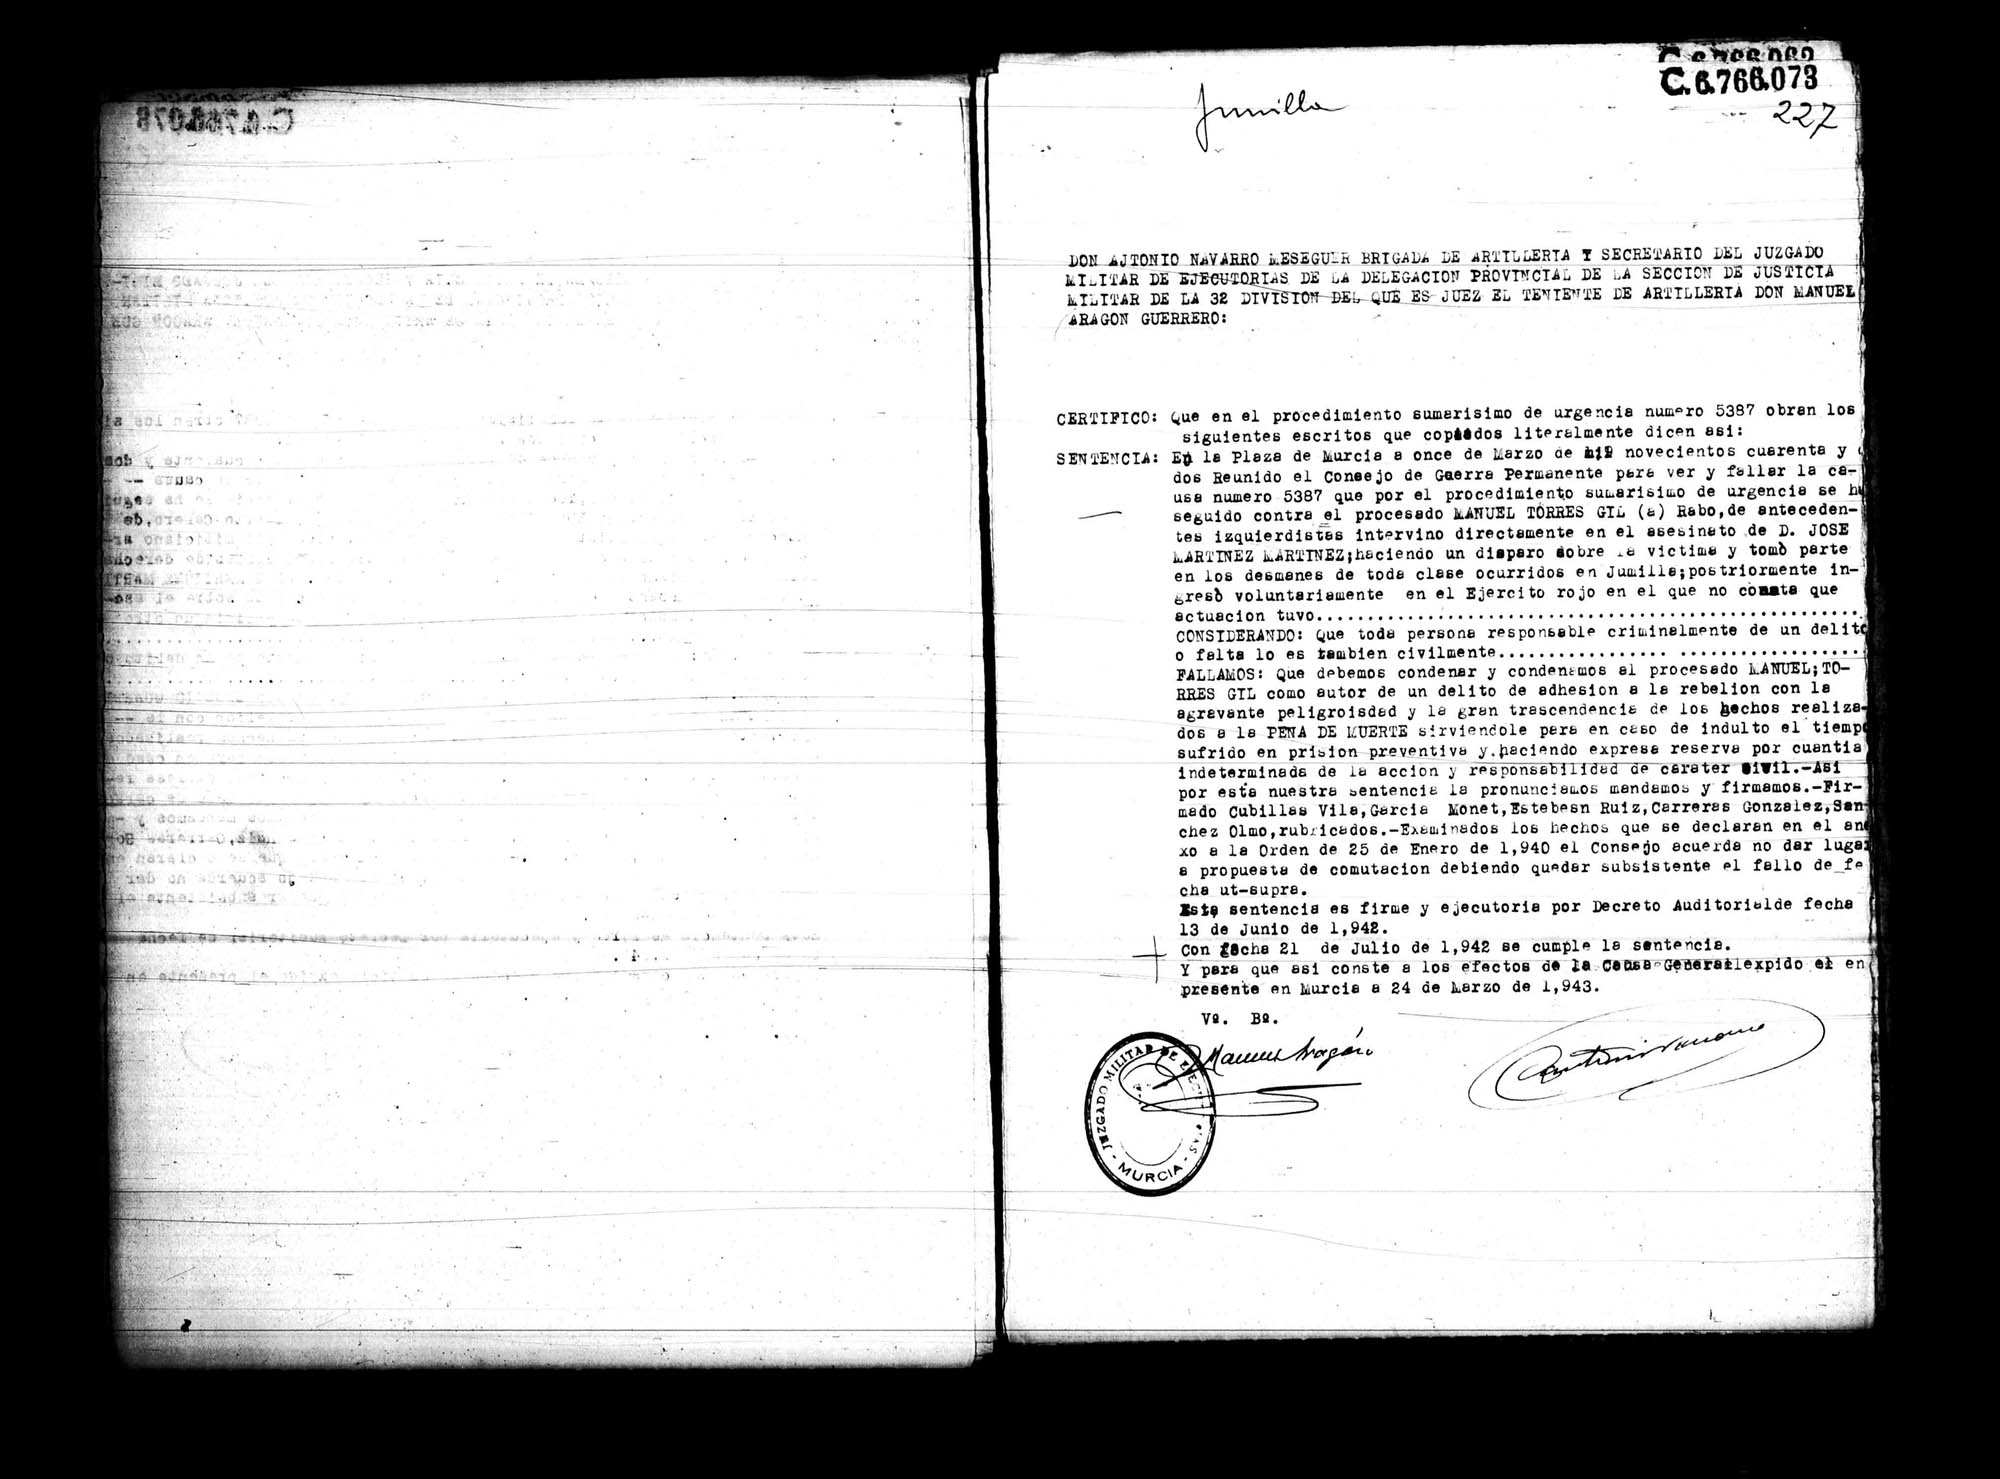 Certificado de la sentencia pronunciada contra Manuel Torres Gil, causa 5387, el 11 de marzo de 1942 en Murcia.